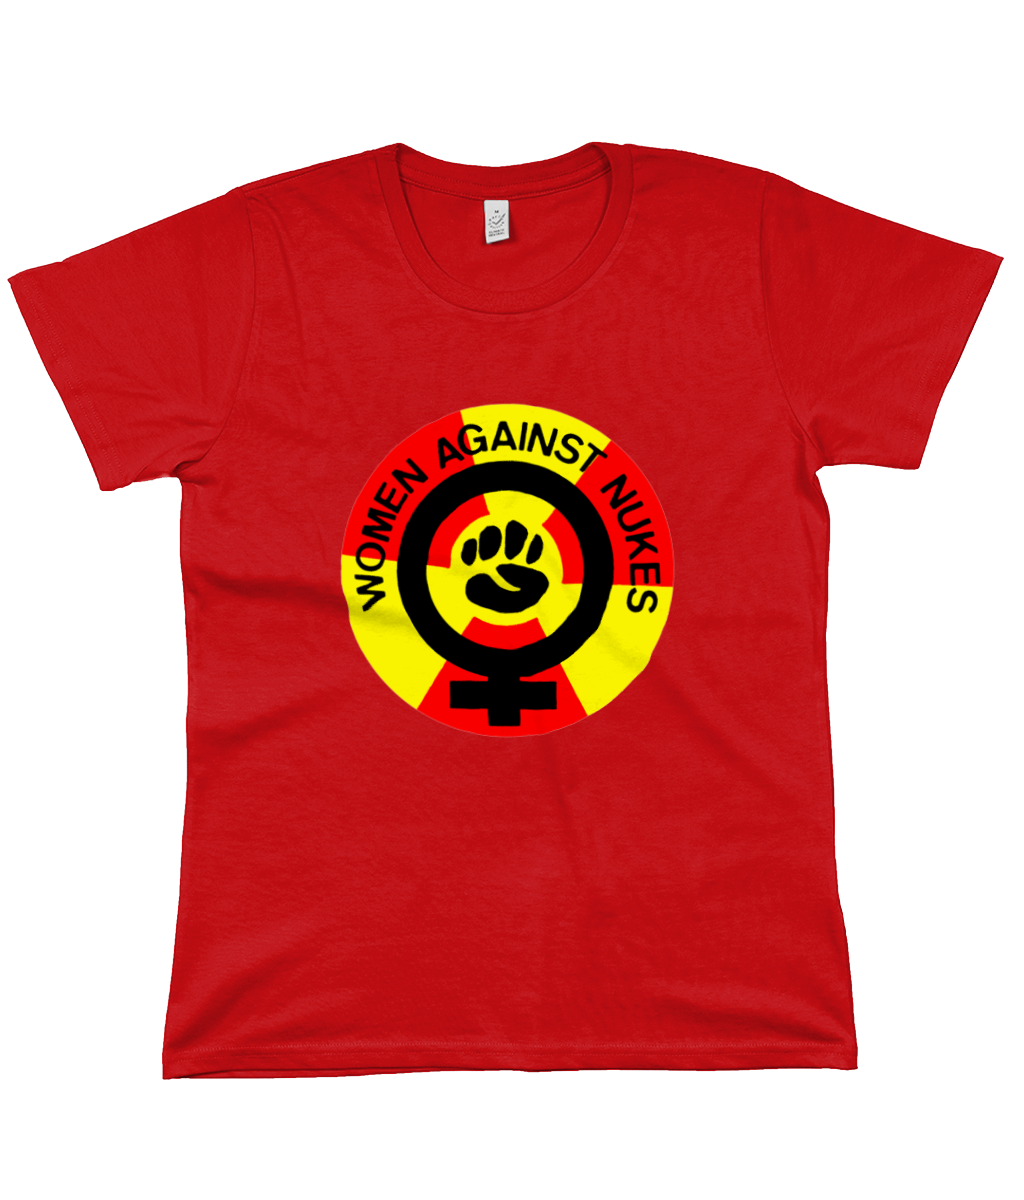 WOMEN AGAINST NUKES - Women's T Shirt